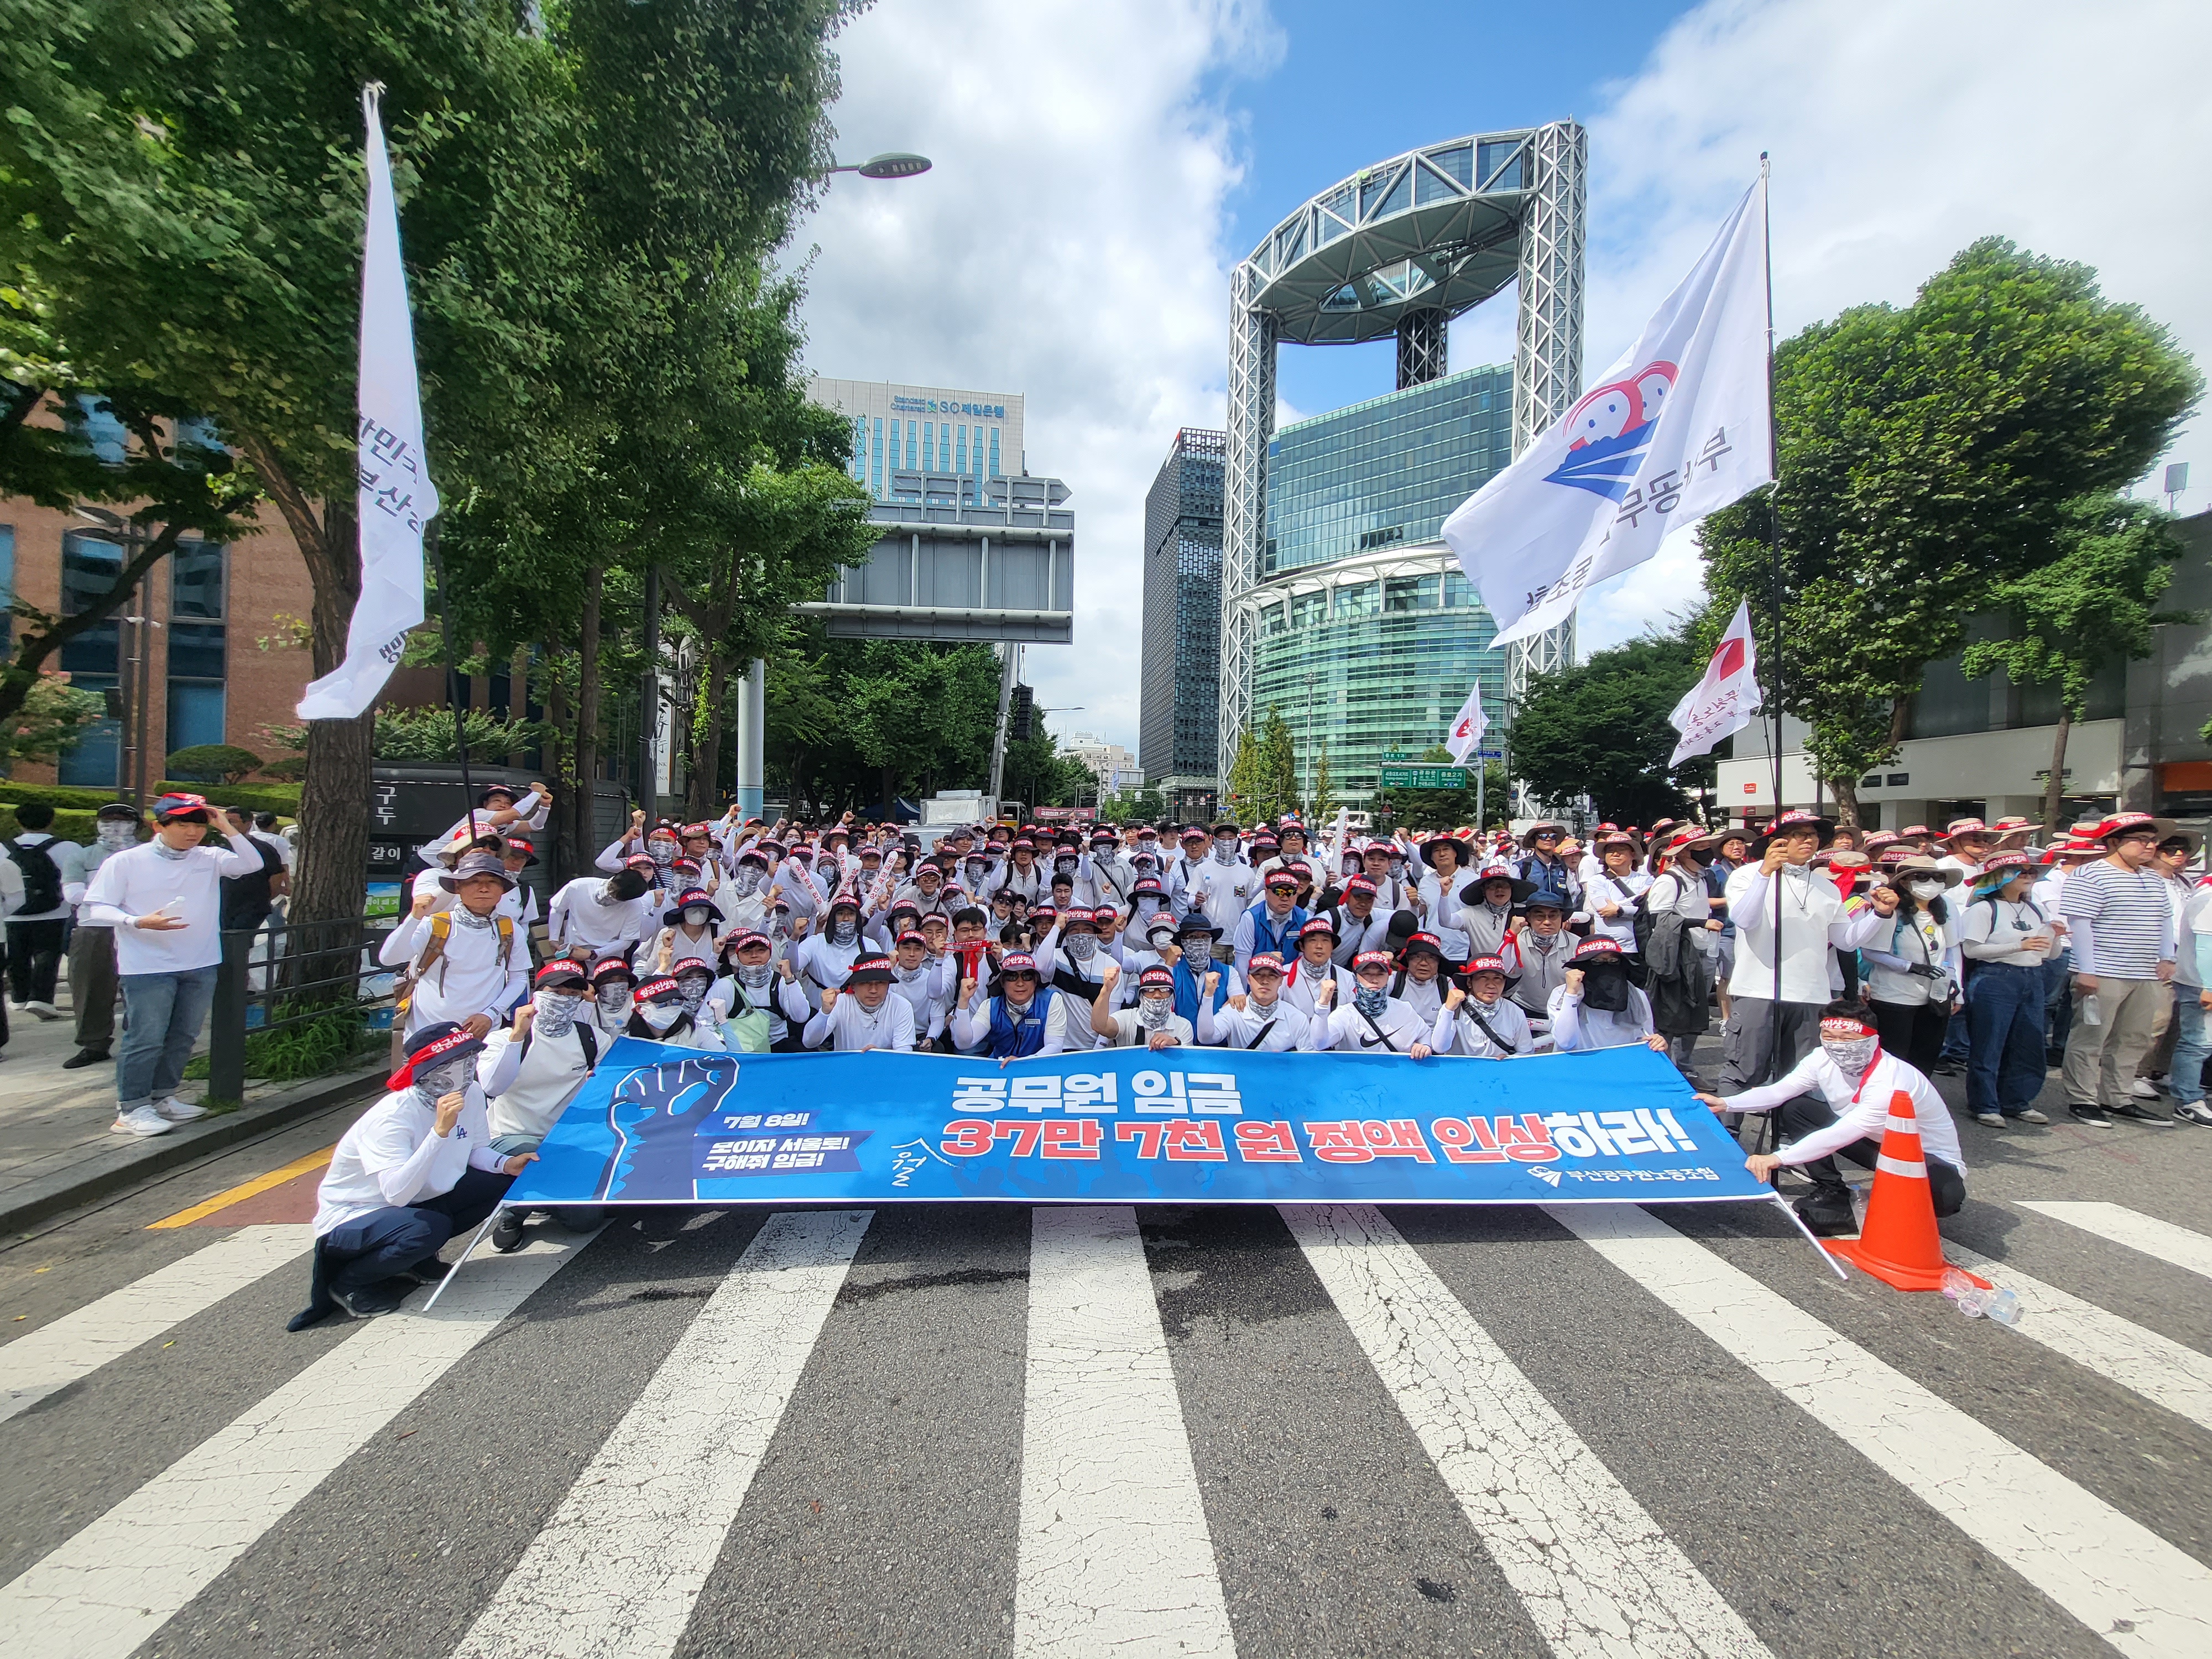 공무원노동자 보수인상 총궐기대회 ! (23.7.8)